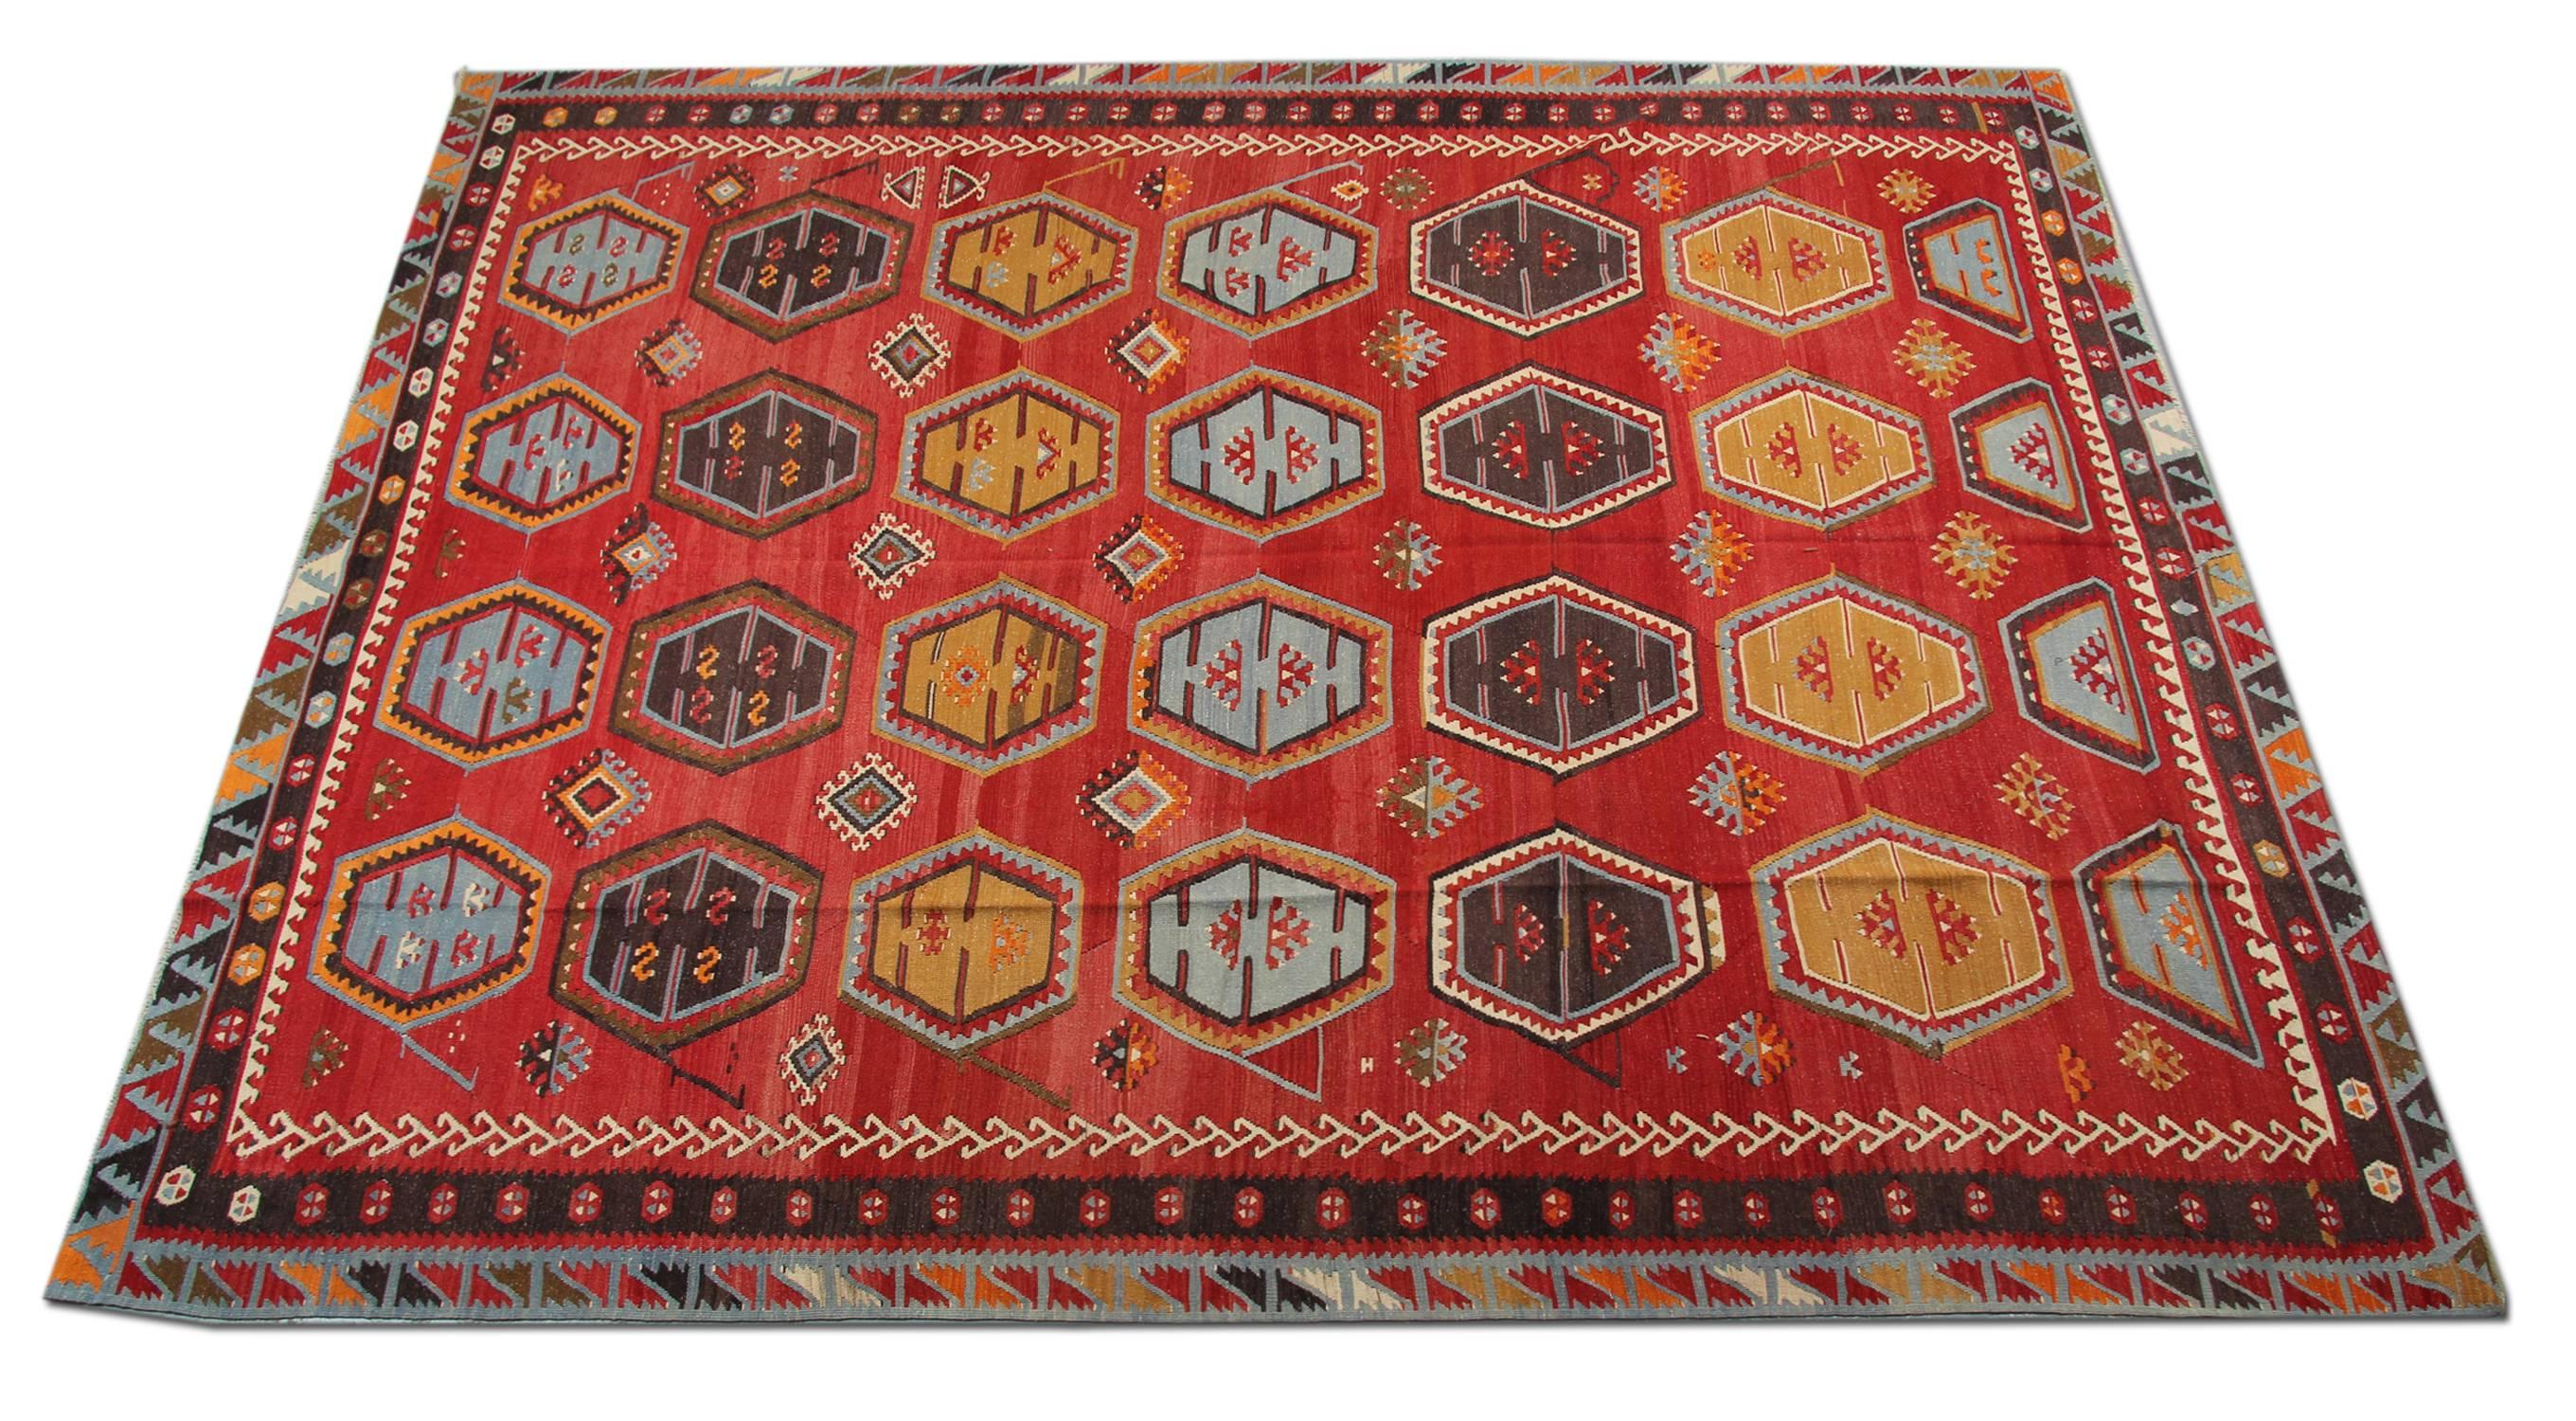 Le tapis S¸arkis¸la Kilim, fabriqué à la main, est l'un des tapis les plus décoratifs ; le Kilim turc peut constituer un élément de design supplémentaire pour la décoration de sa maison.
La plupart des kilims peuvent toujours être en harmonie avec